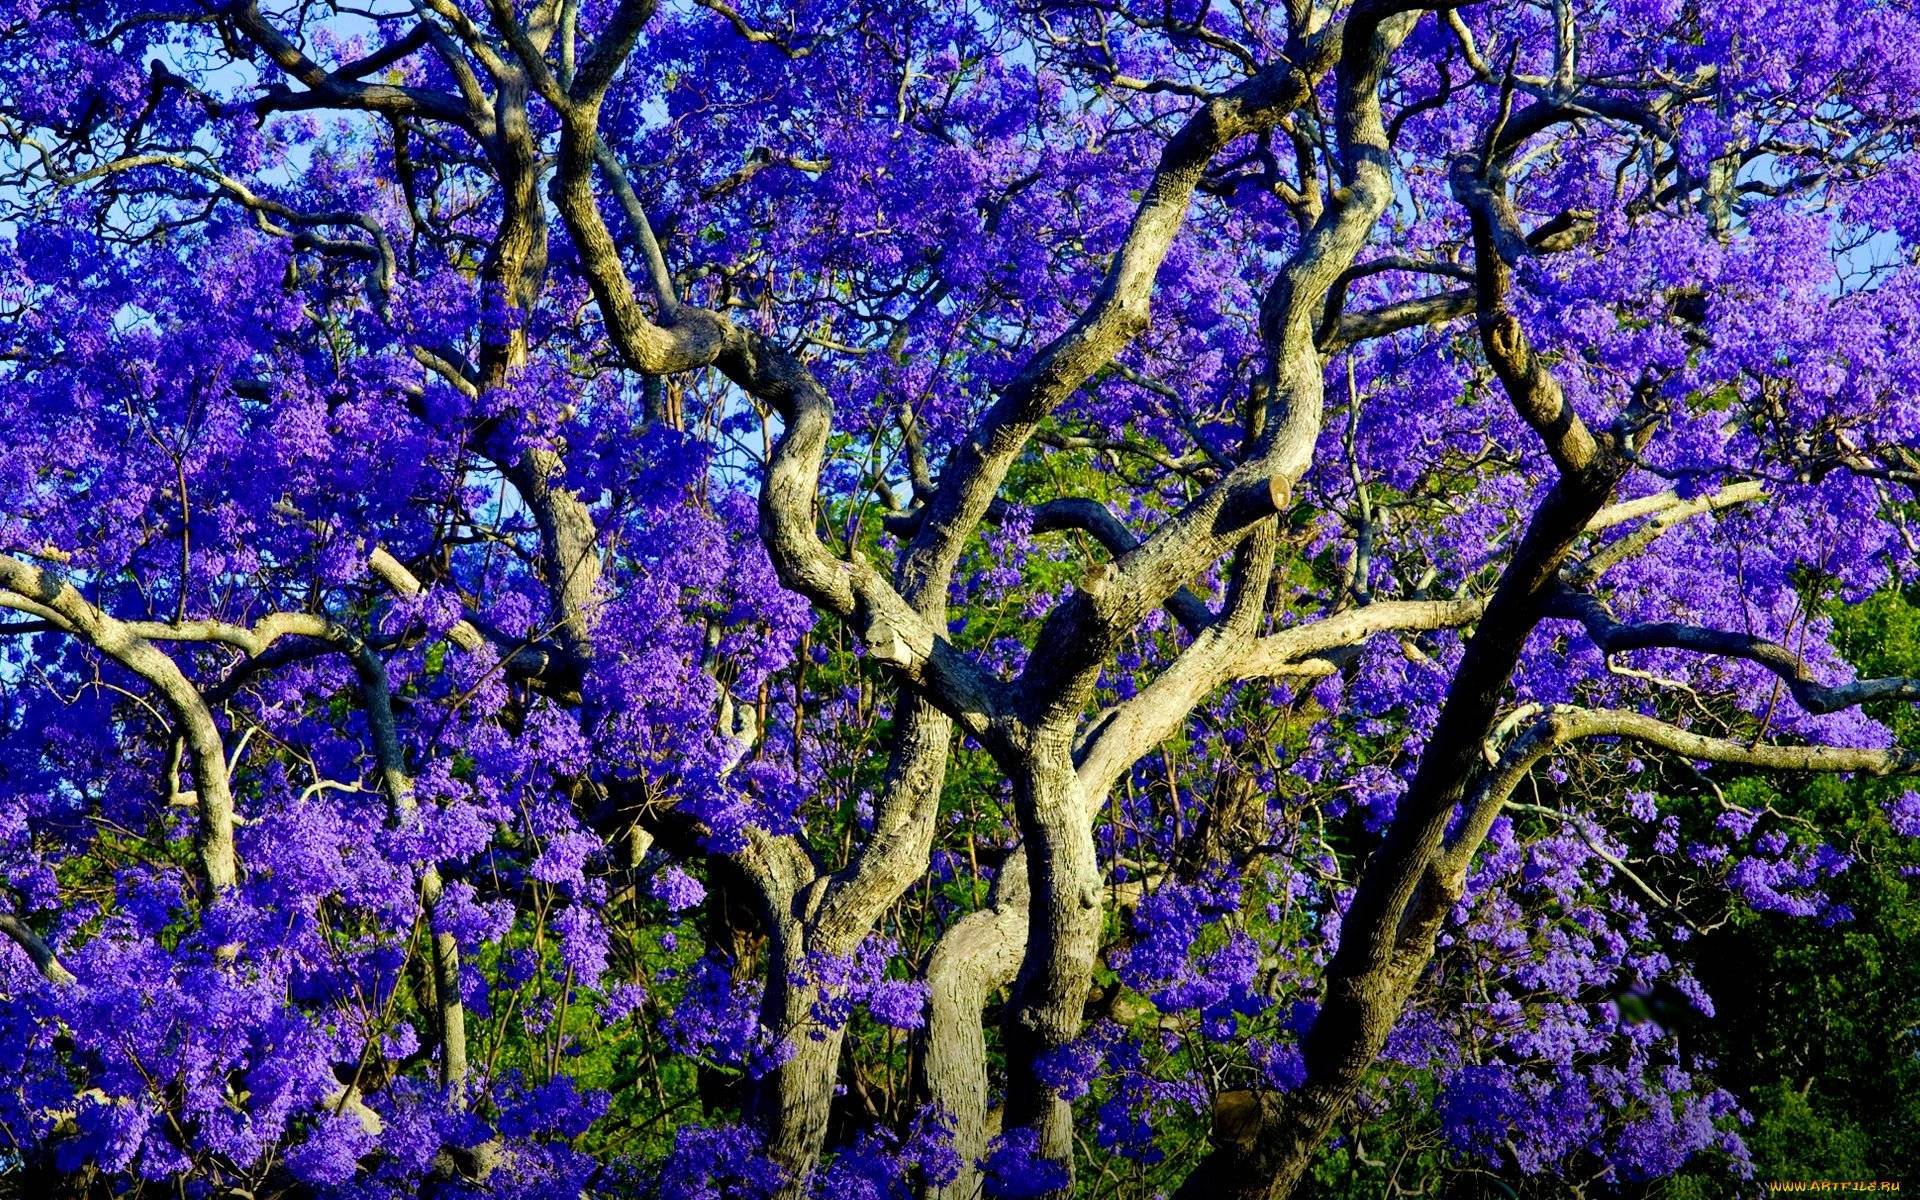 Дерево с фиолетовыми цветами как называется. жакаранда: советы по выращиванию и размножению палисандрового дерева